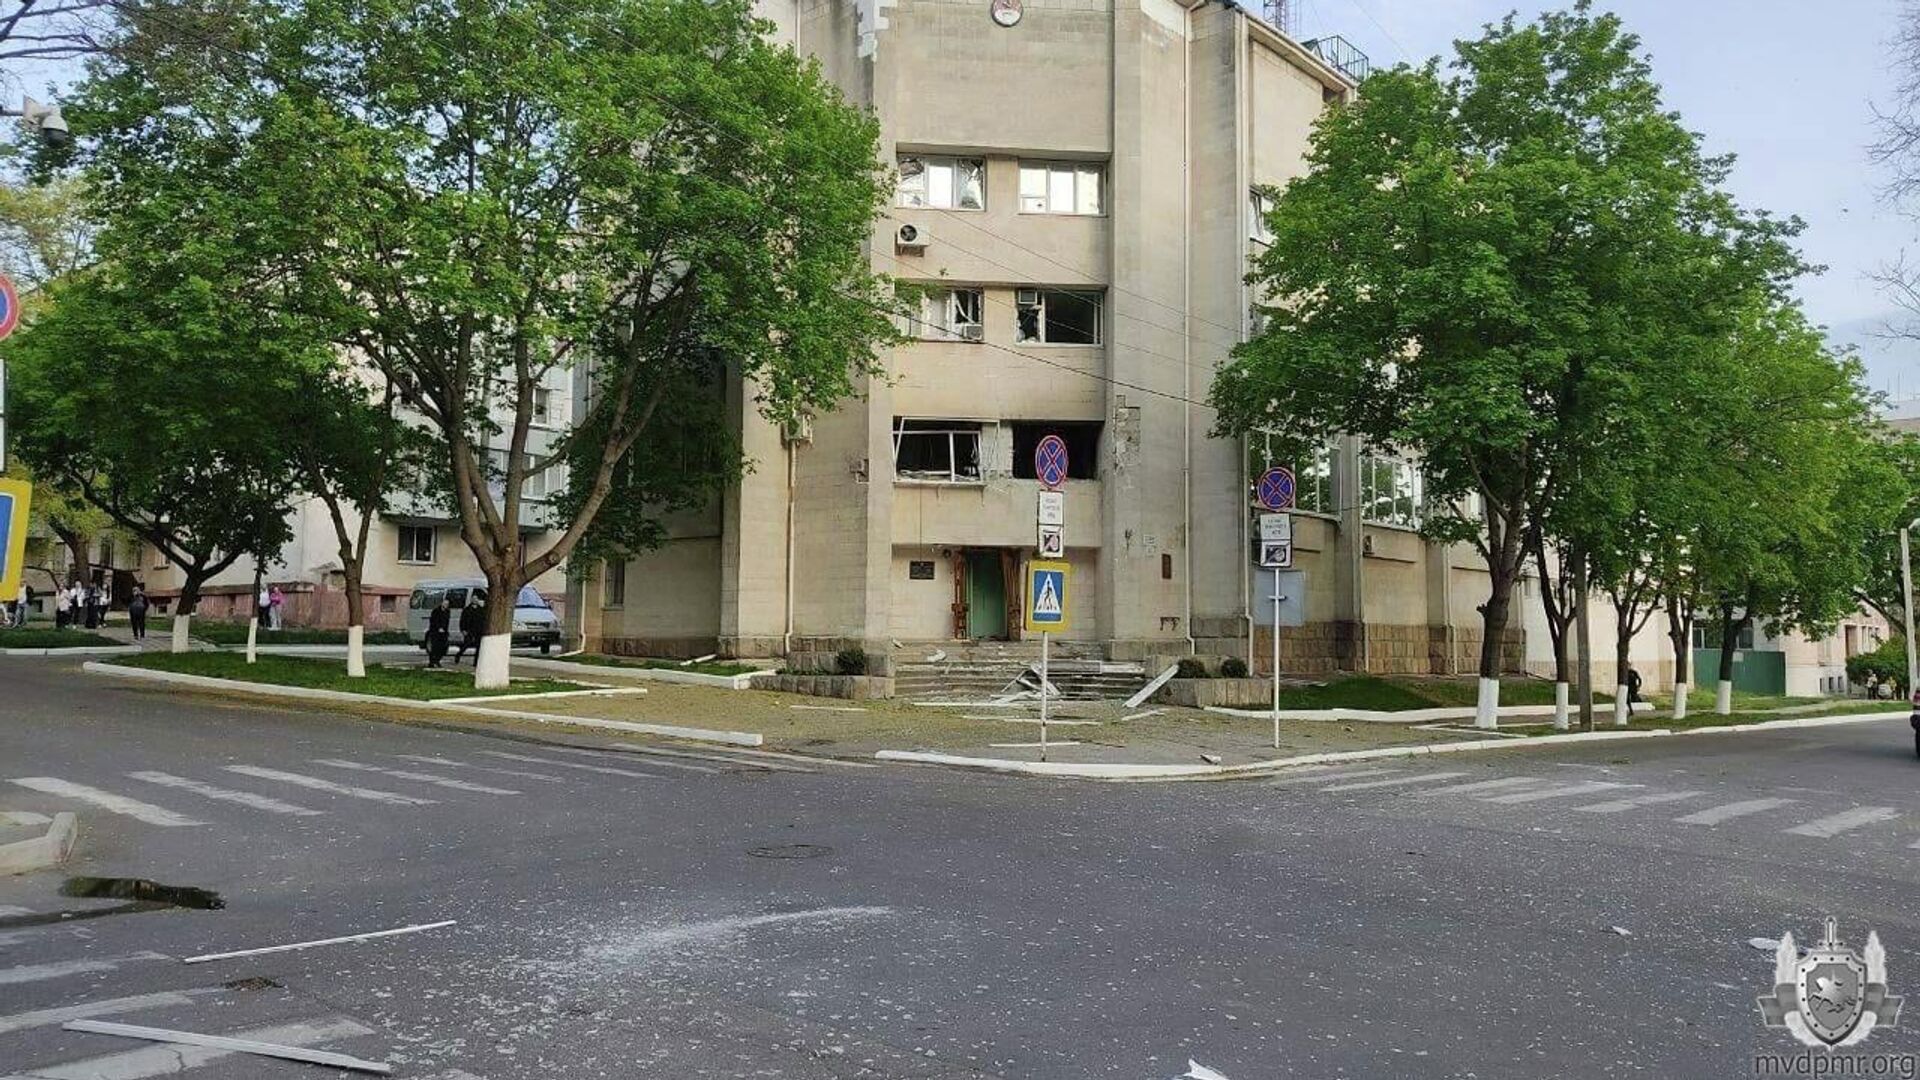 Последствия обстрела здания Министерства госбезопасности ПМР в Тирасполе, 25 апреля 2022 года  - Sputnik Латвия, 1920, 27.04.2022